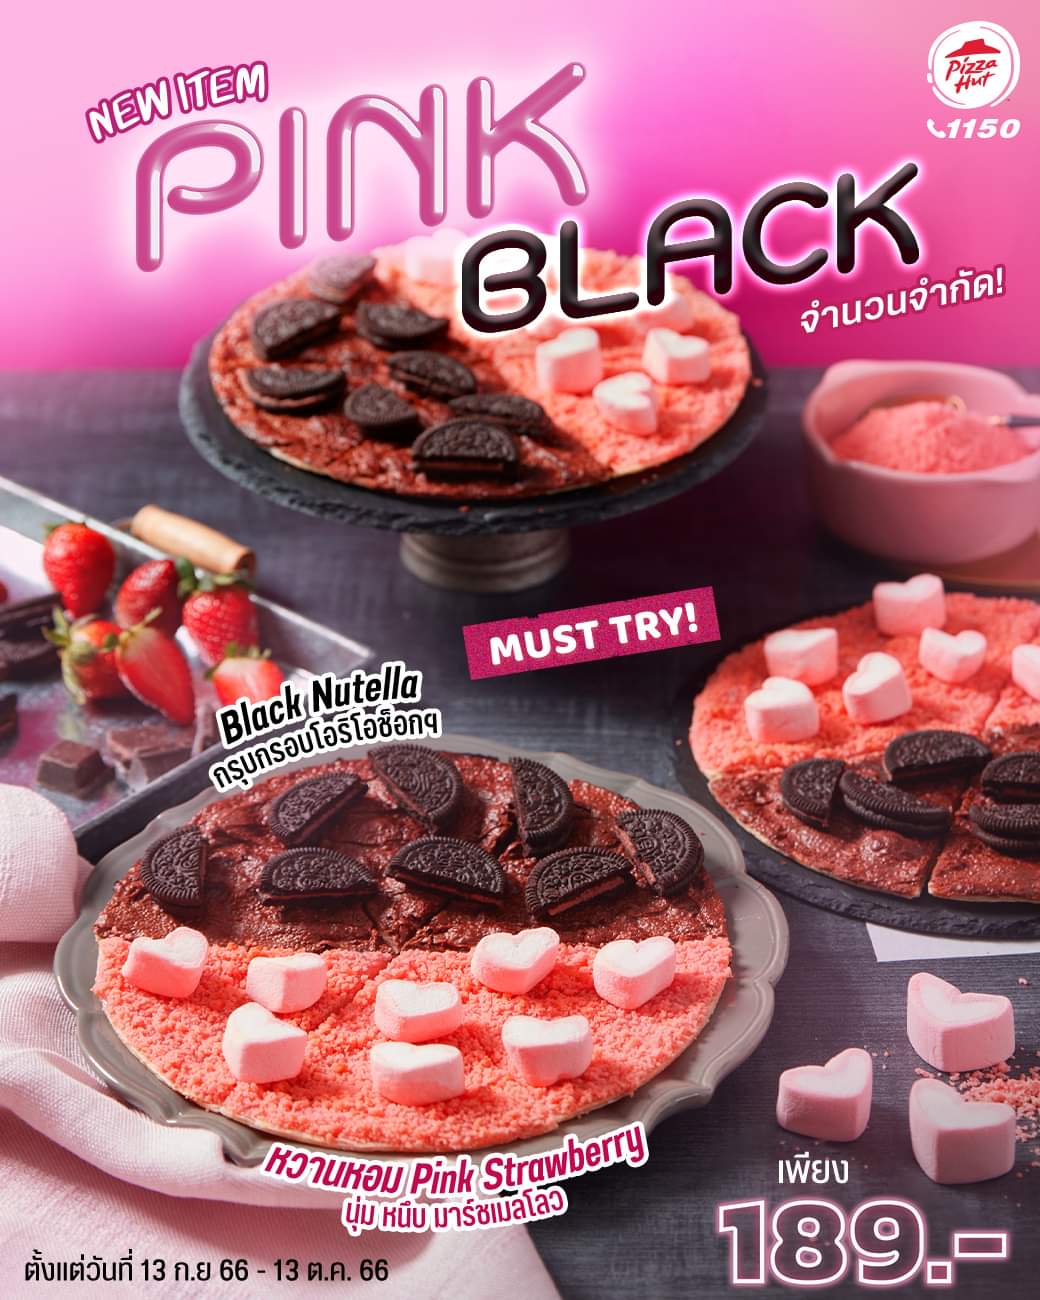 โปรโมชั่น พิซซ่าฮัท :  ลองยัง!? พิซซ่าหน้าใหม่ สุดคิวท์ หวานฉ่ำเต็มคำ   Pink & Black ที่รวมความหวานแบบตัวท็อป